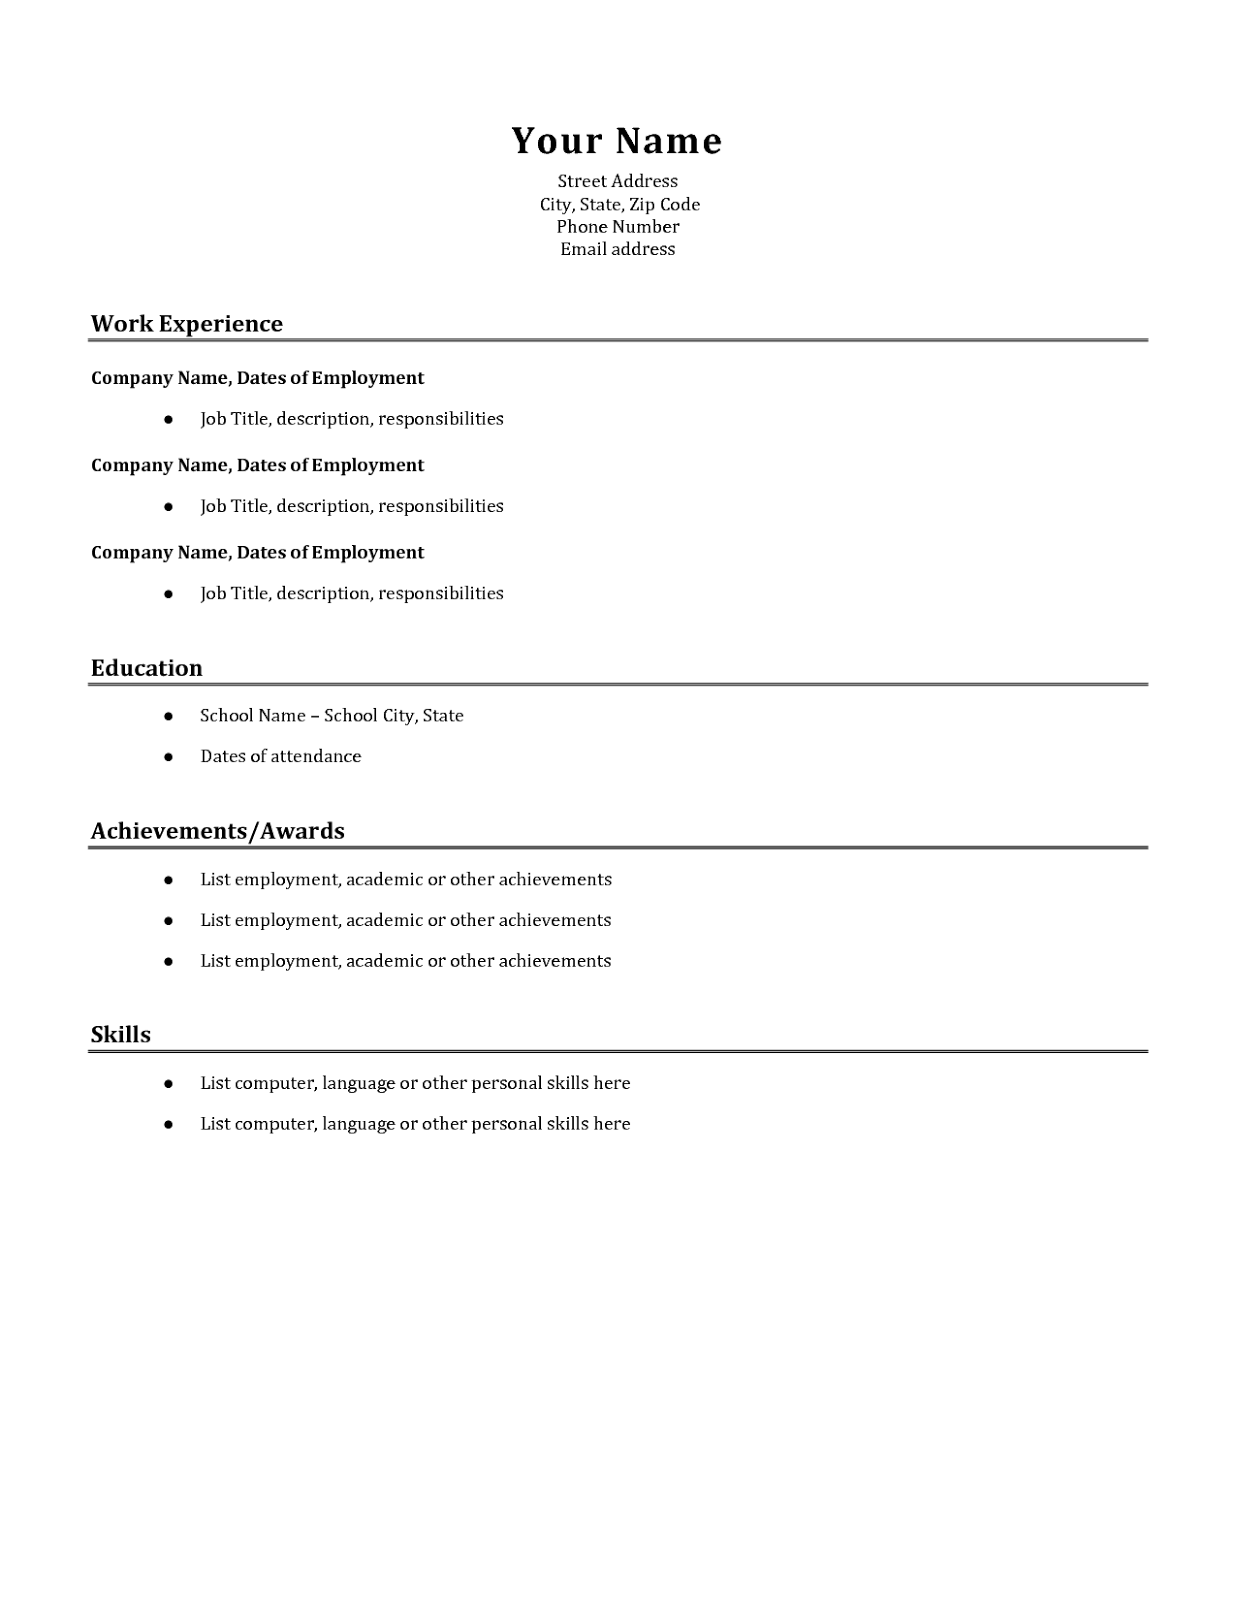 Sample of Simple Resume | Sample Resumes